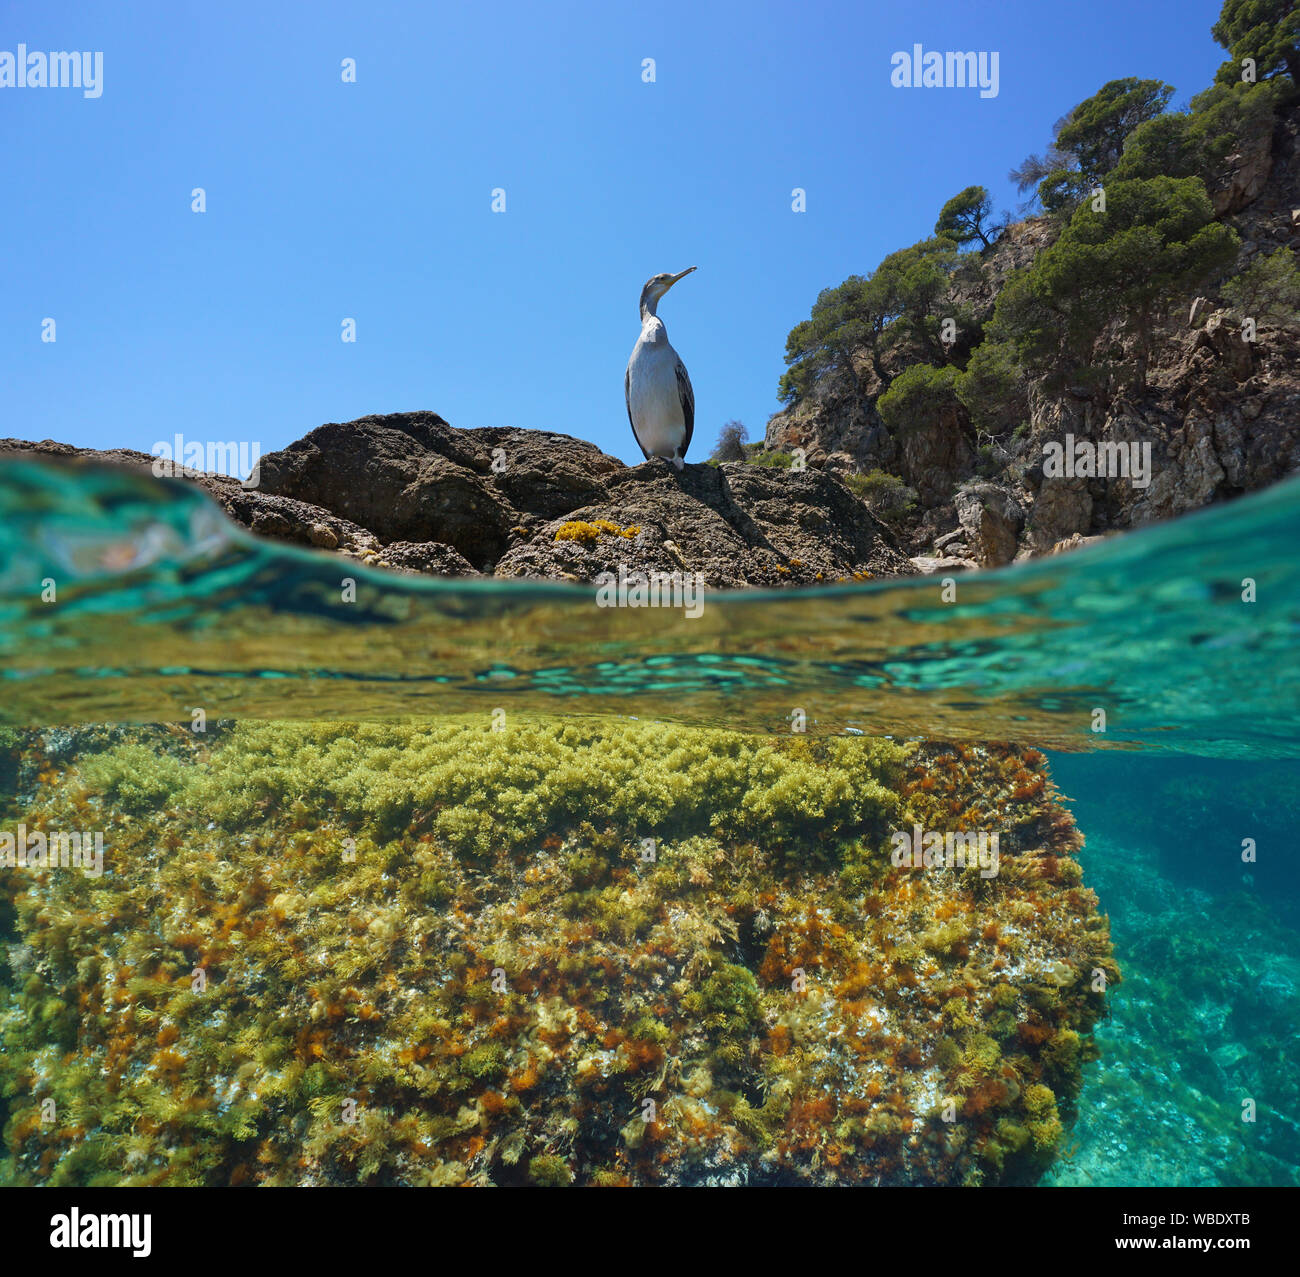 Un cormoran oiseau sur un rocher près de la rive de la mer Méditerranée, et partagé au-dessus et au-dessous de la surface de l'eau, Espagne, Costa Brava, Catalogne Banque D'Images